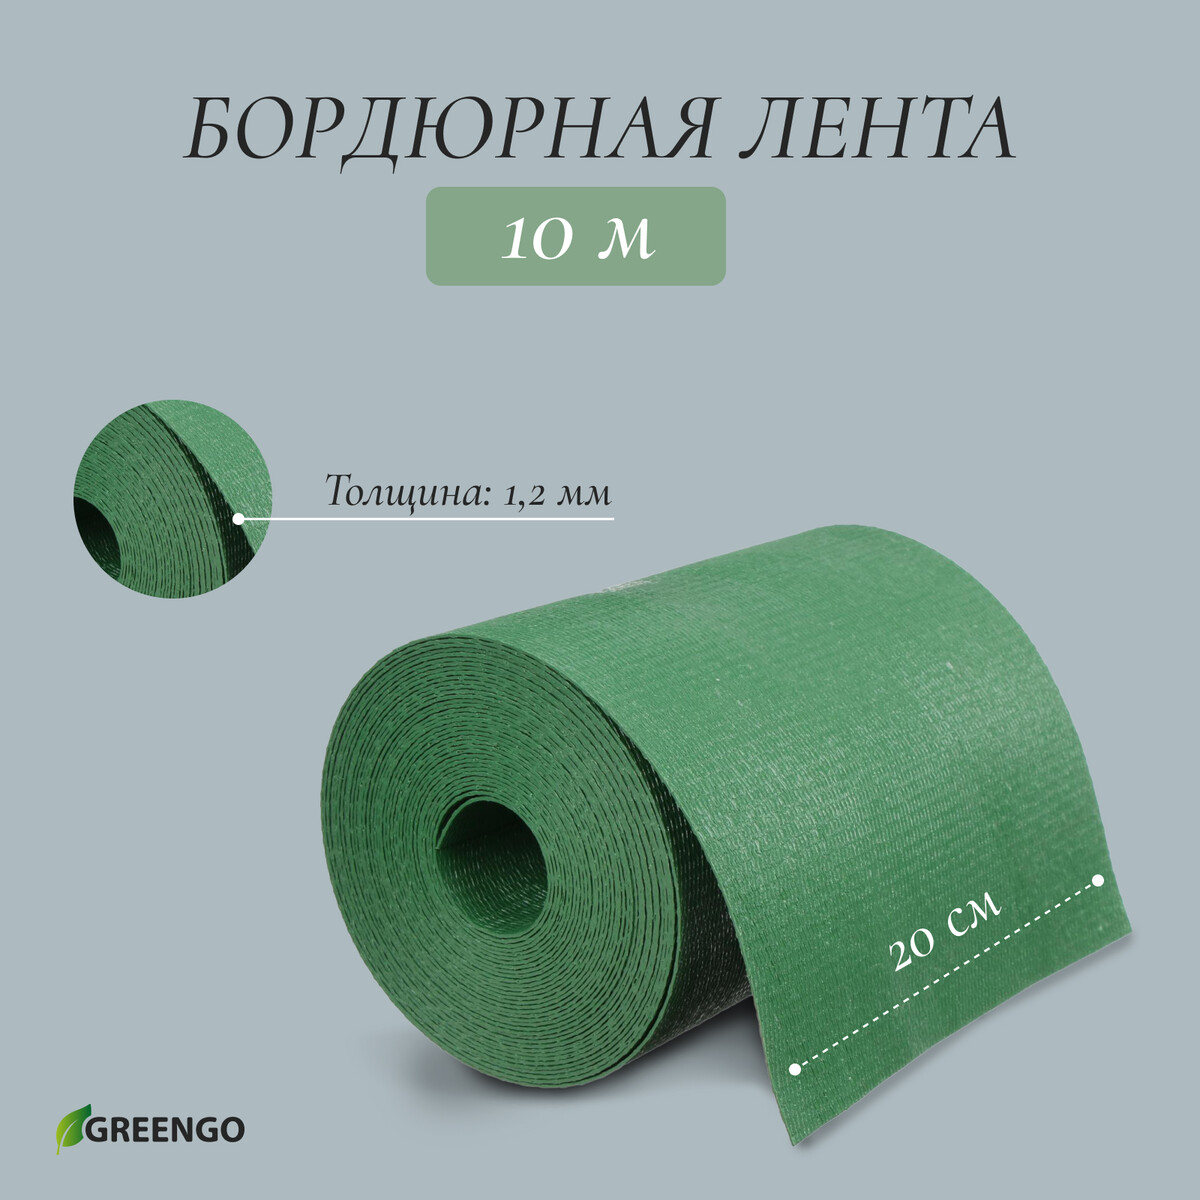 Лента бордюрная, 0.2 × 10 м, толщина 1.2 мм, пластиковая, зеленая, greengo лента бордюрная 0 15 × 9 м толщина 1 2 мм пластиковая фигурная коричневая